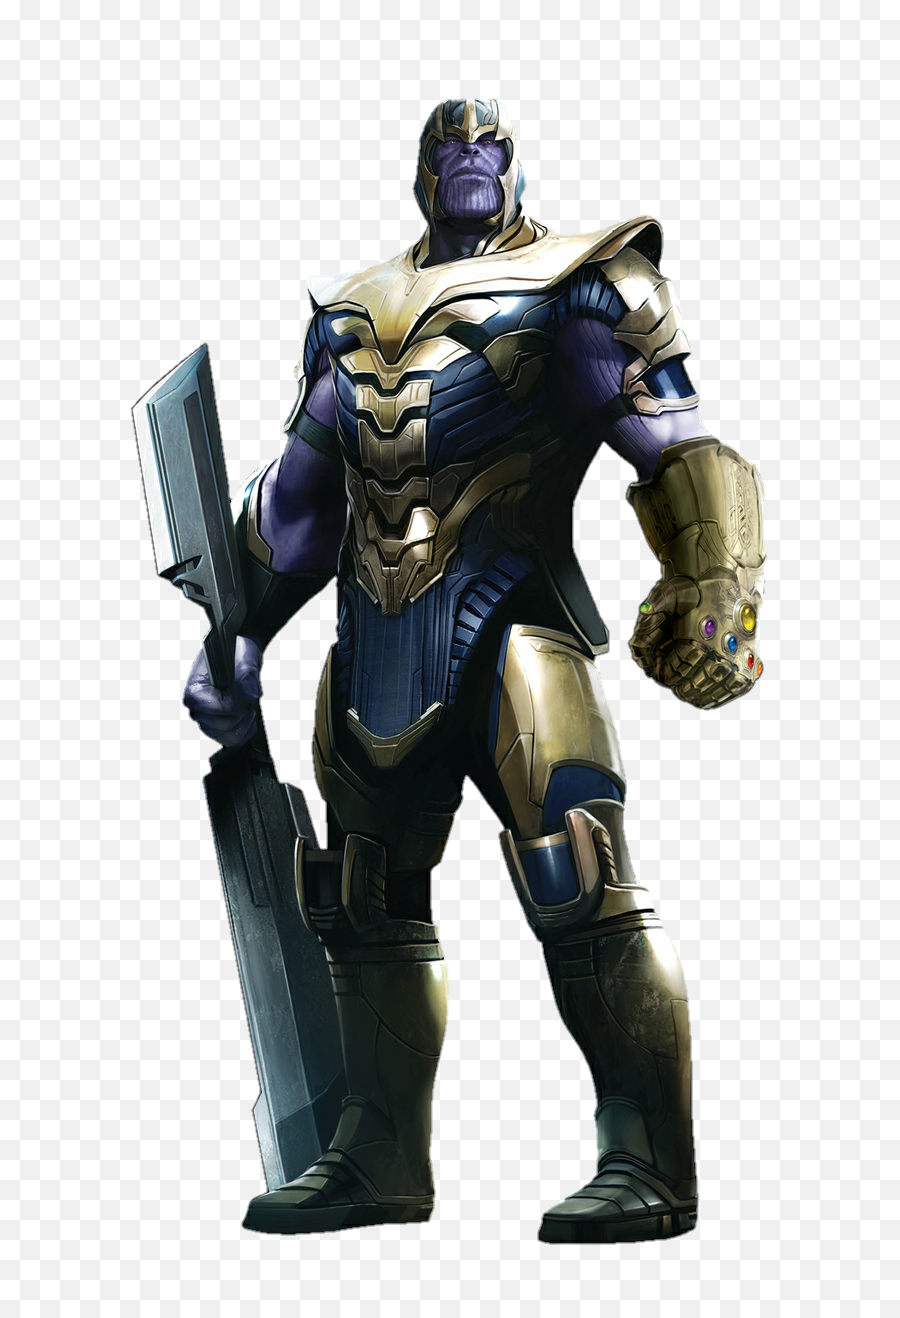 Avengers Endgame Transparent Images - Thanos Cutout Png,Avengers Transparent